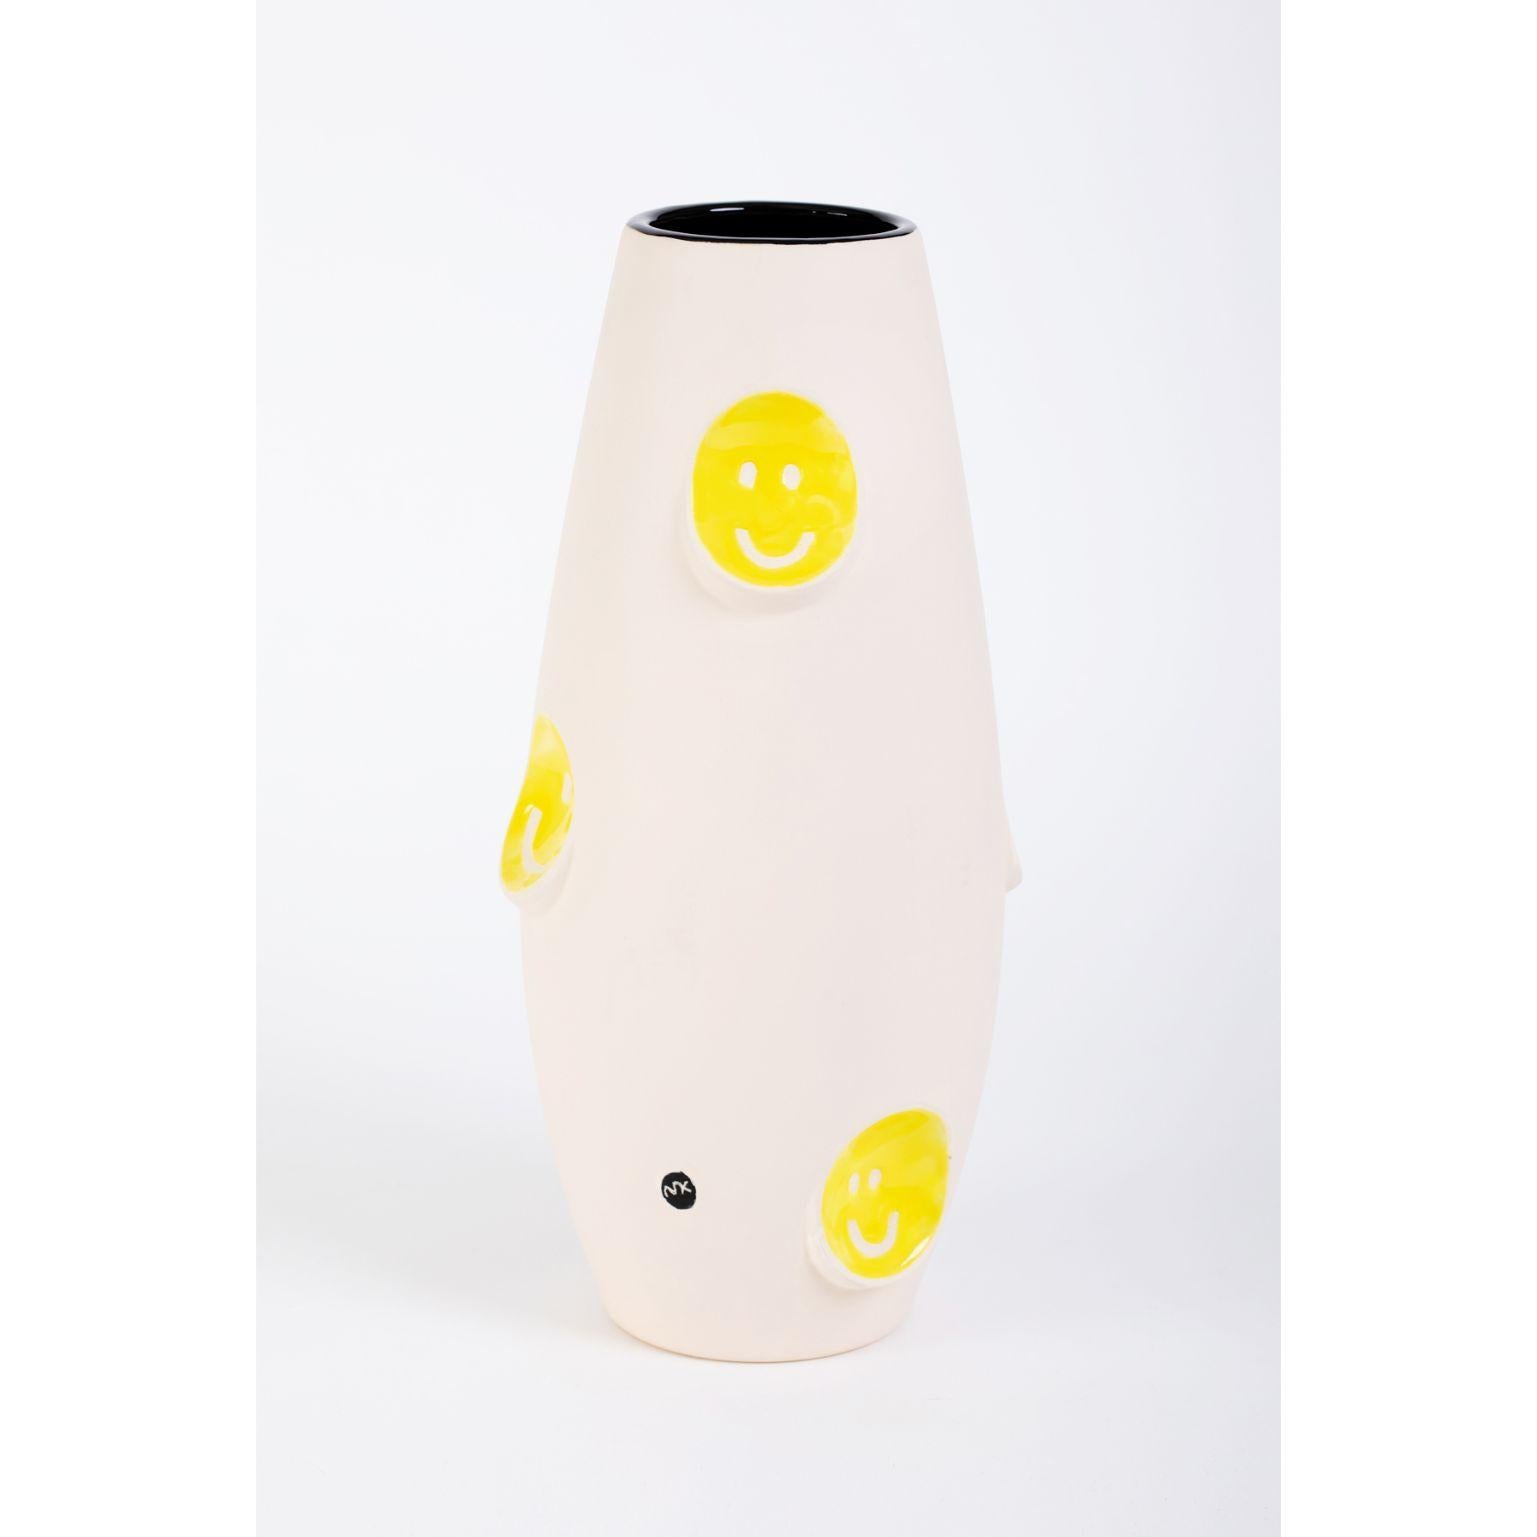 Vase en céramique Oko Pop - Smiley par Malwina Konopacka
Sculpture unique ( Décorée et peinte à la main par l'artiste )
MATERIAL : Céramique imprégnée, intérieur émaillé, glaçure jaune sgraffite, peinture sur glaçure
Dimensions : D19, D42